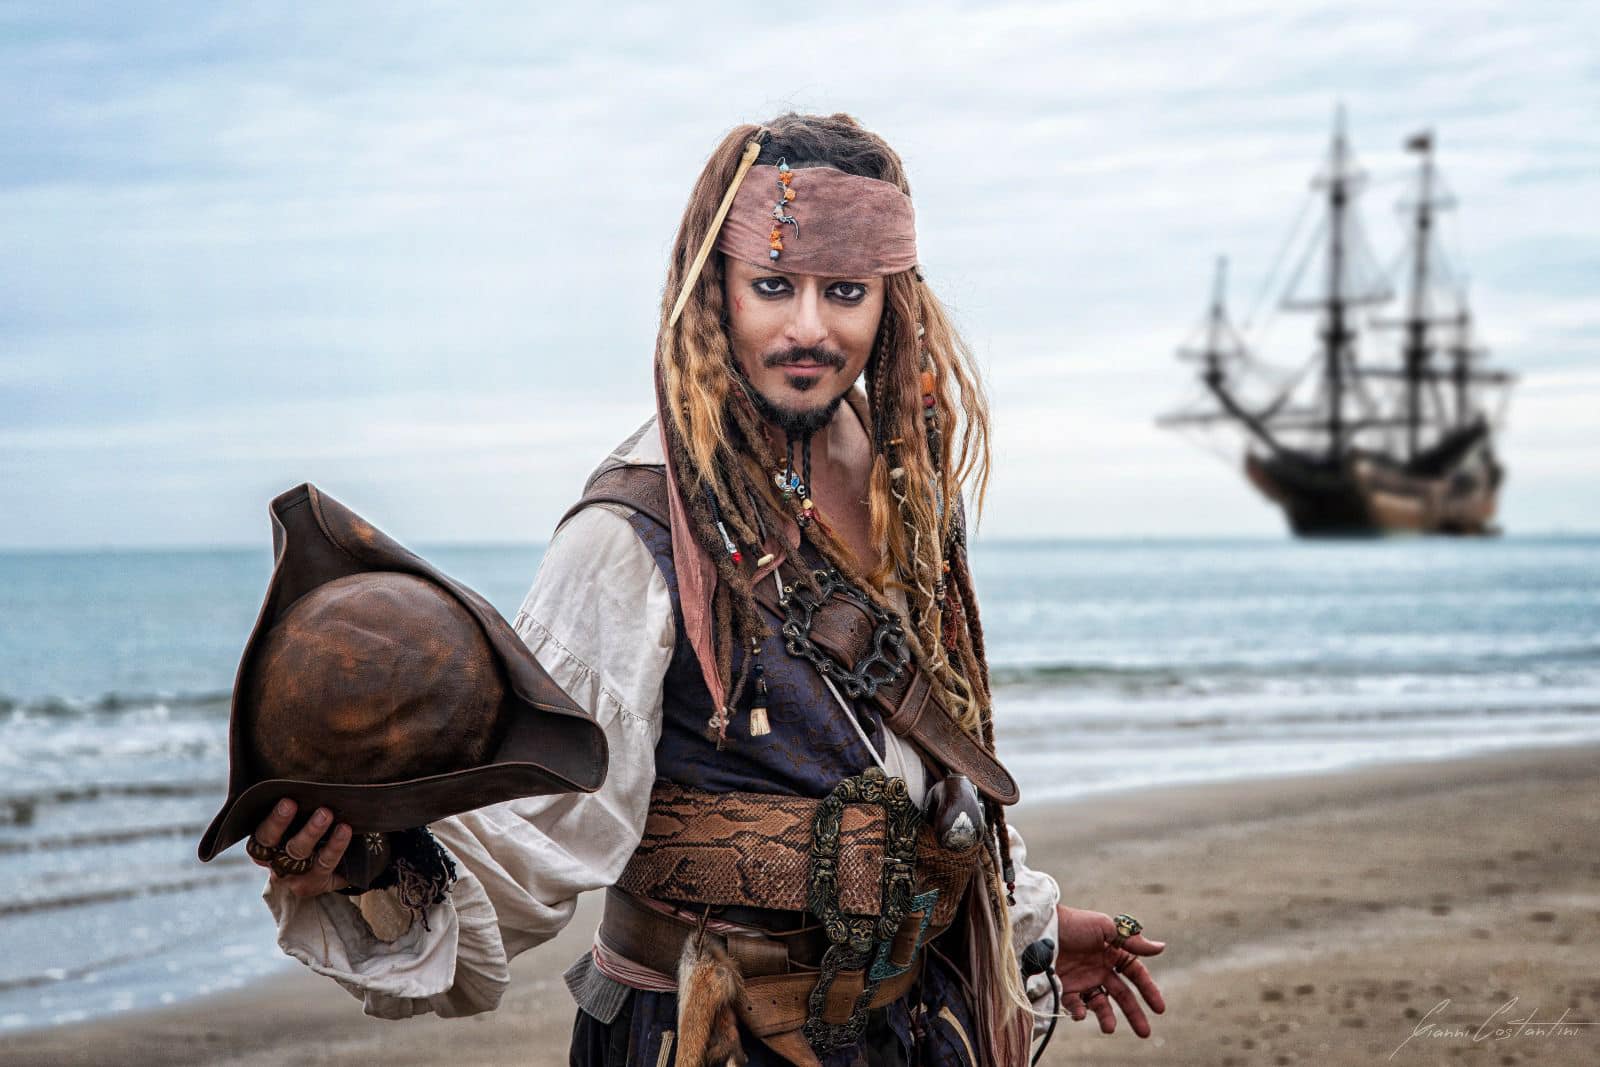 Chi è Louis Guglielmero impersonator di Jack Sparrow?